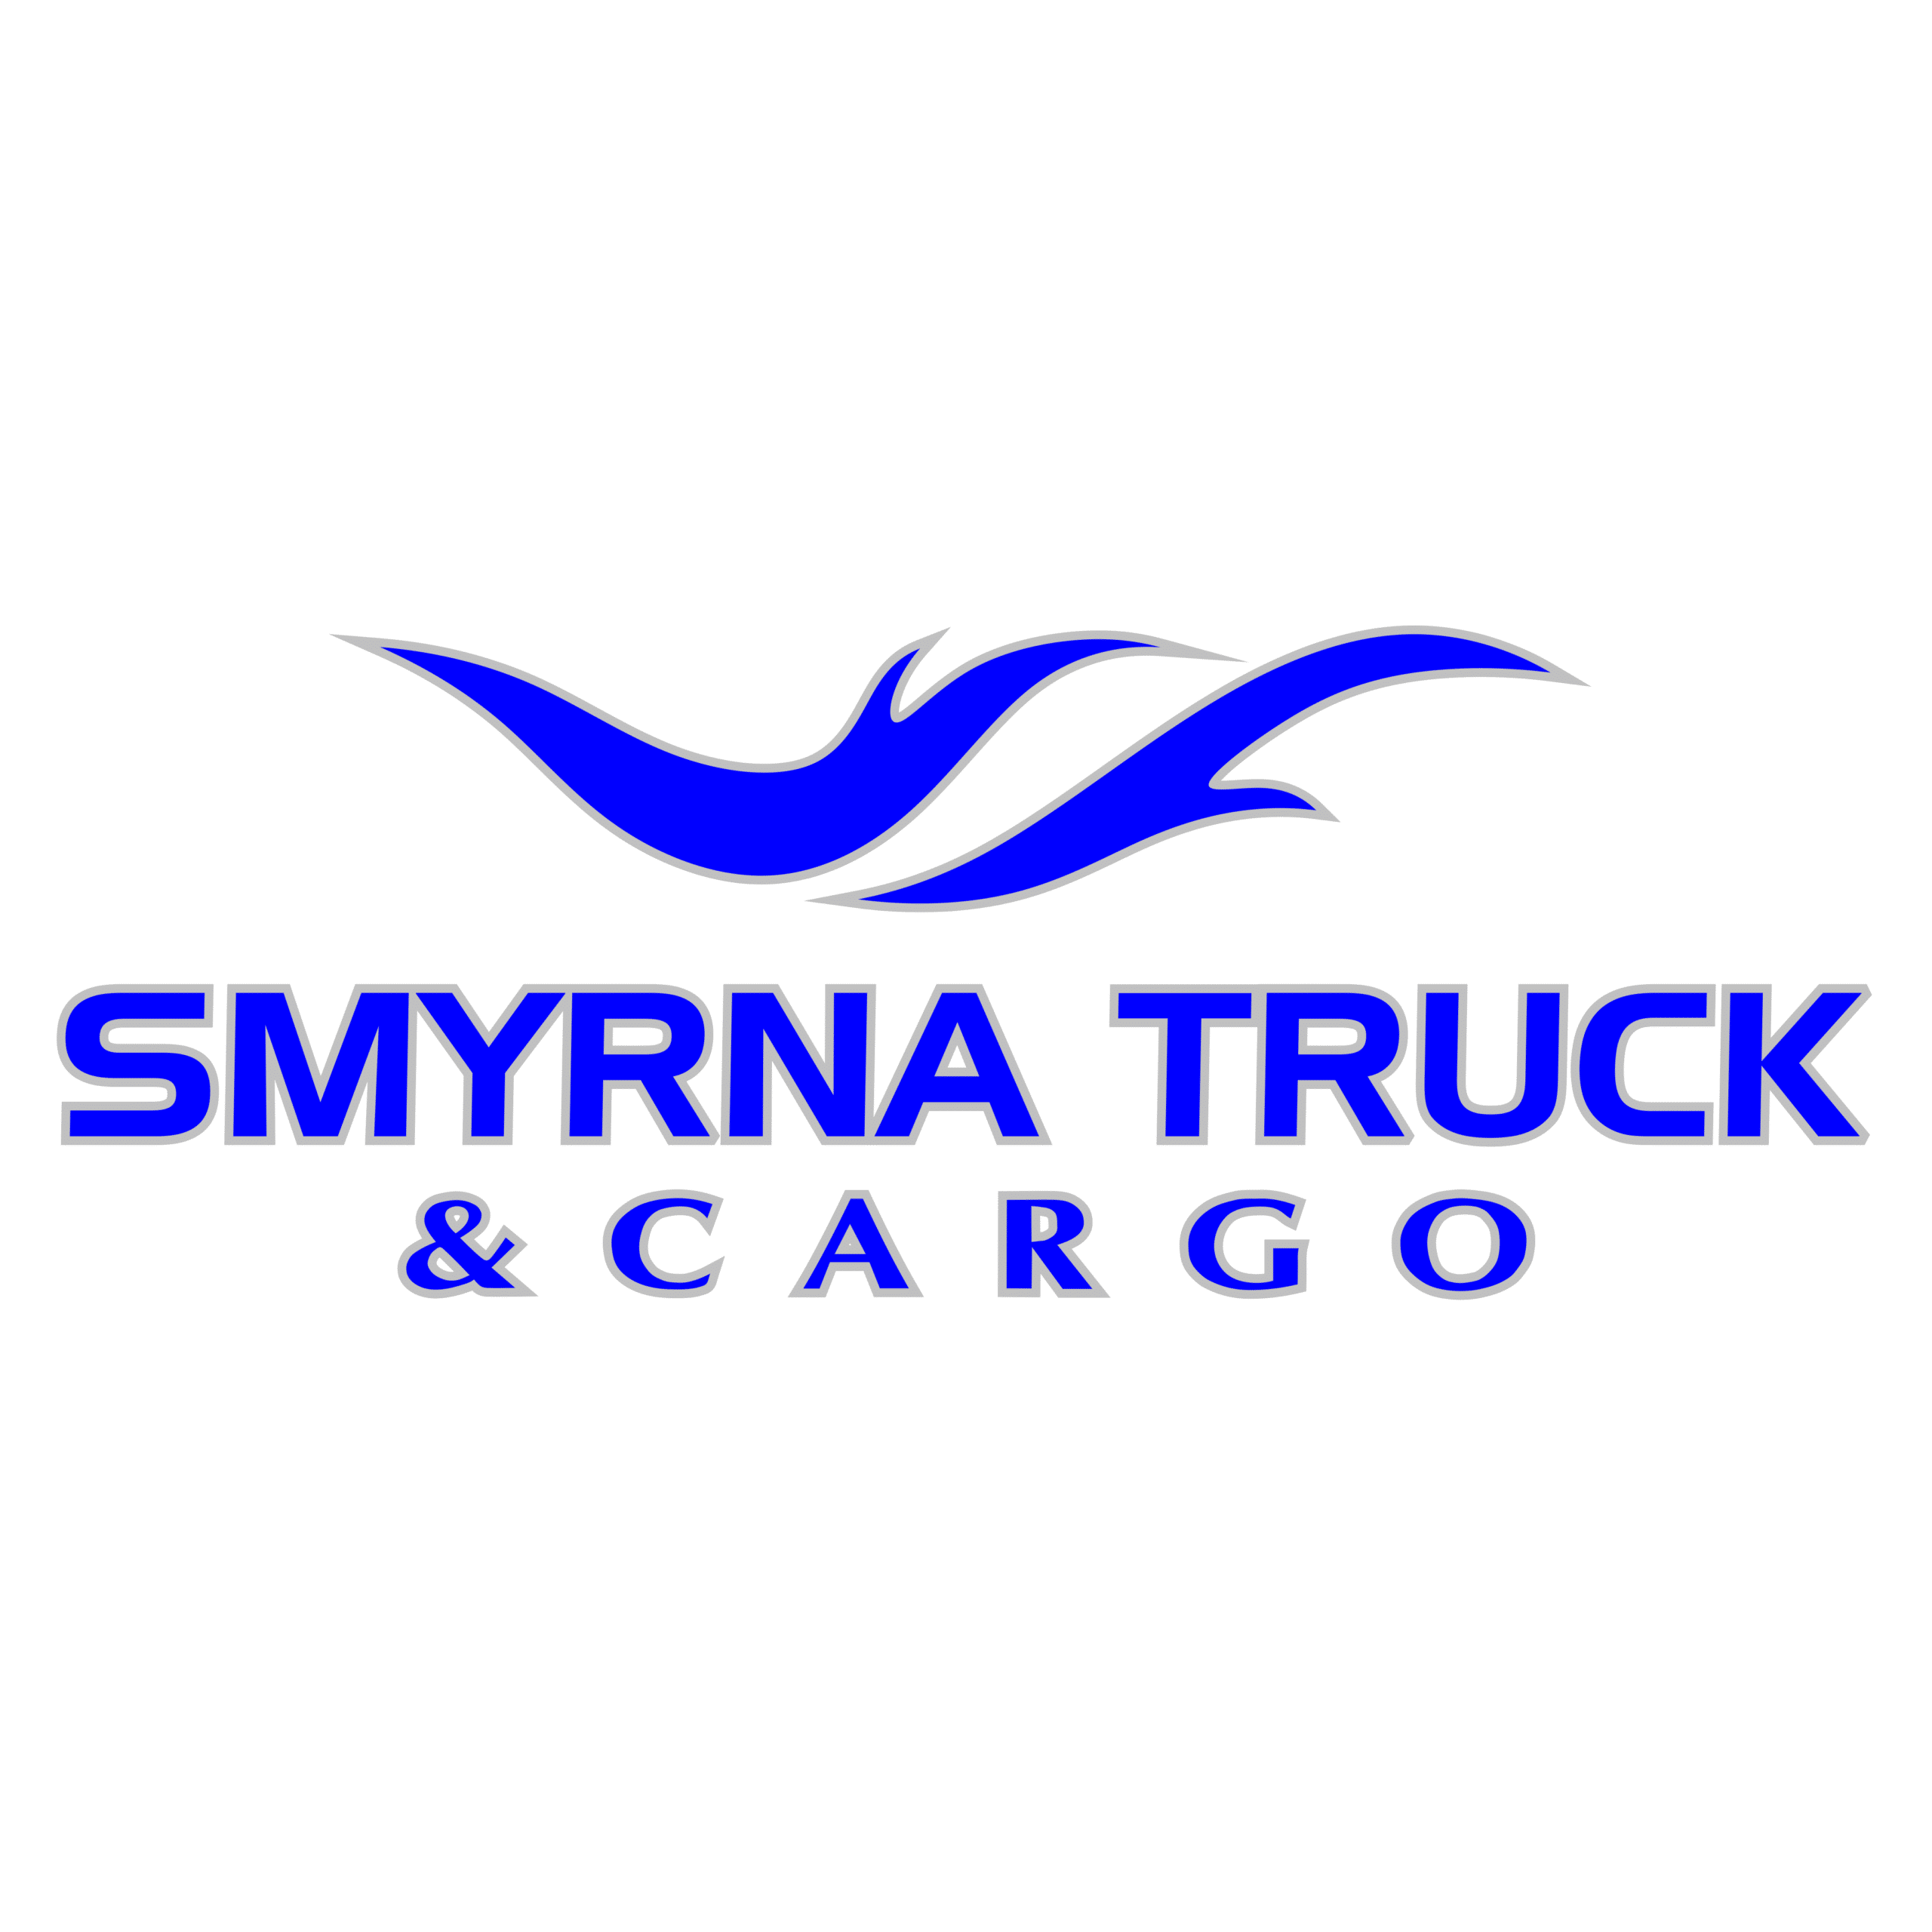 Smyrna Truck & Cargo